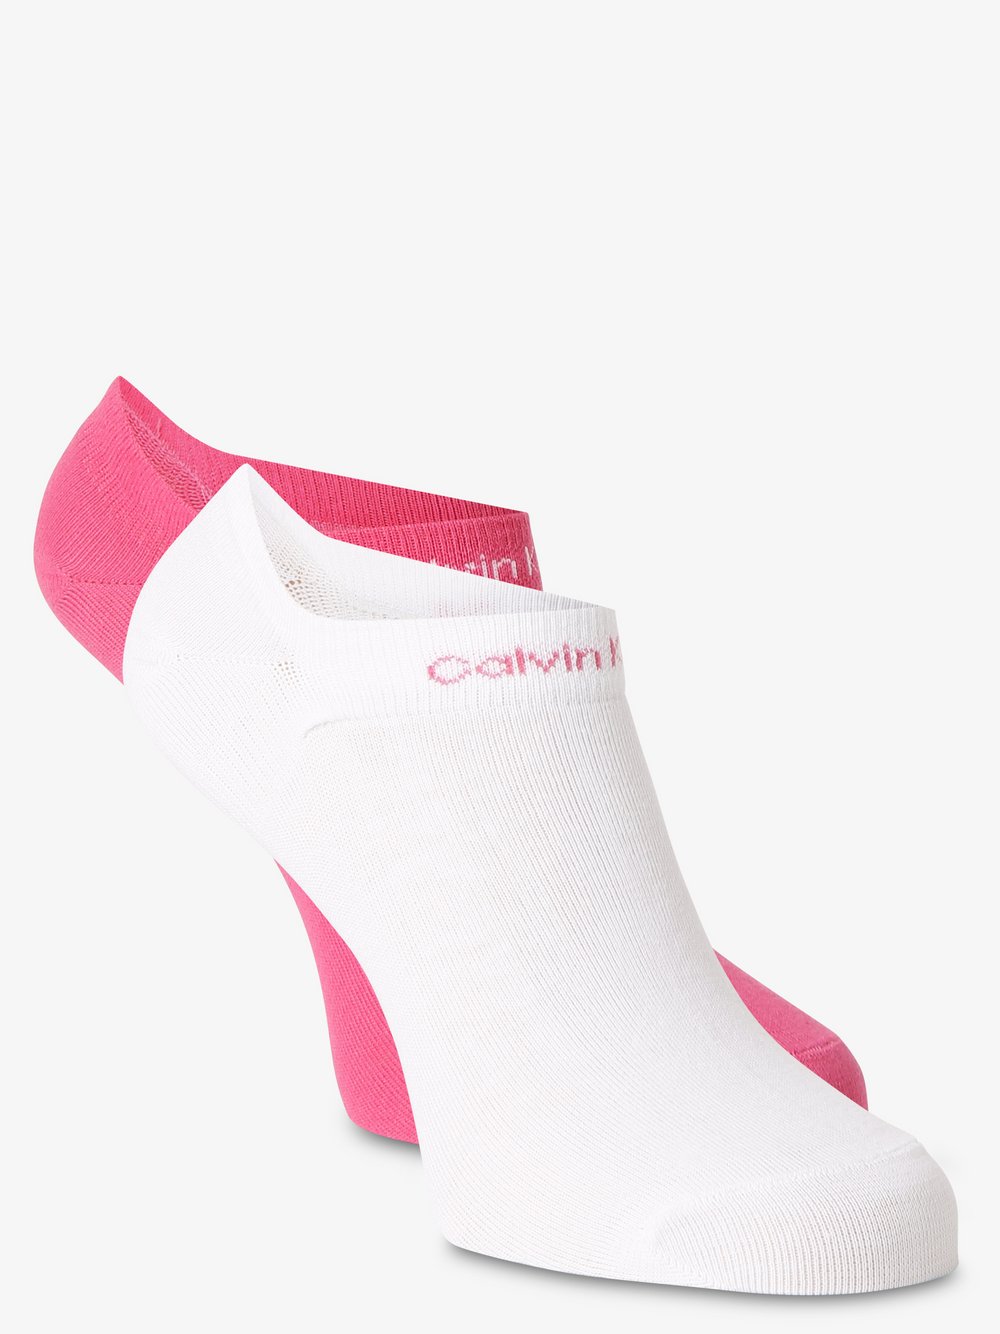 Calvin Klein - Damskie skarpety do obuwia sportowego pakowane po 2 szt., wyrazisty róż